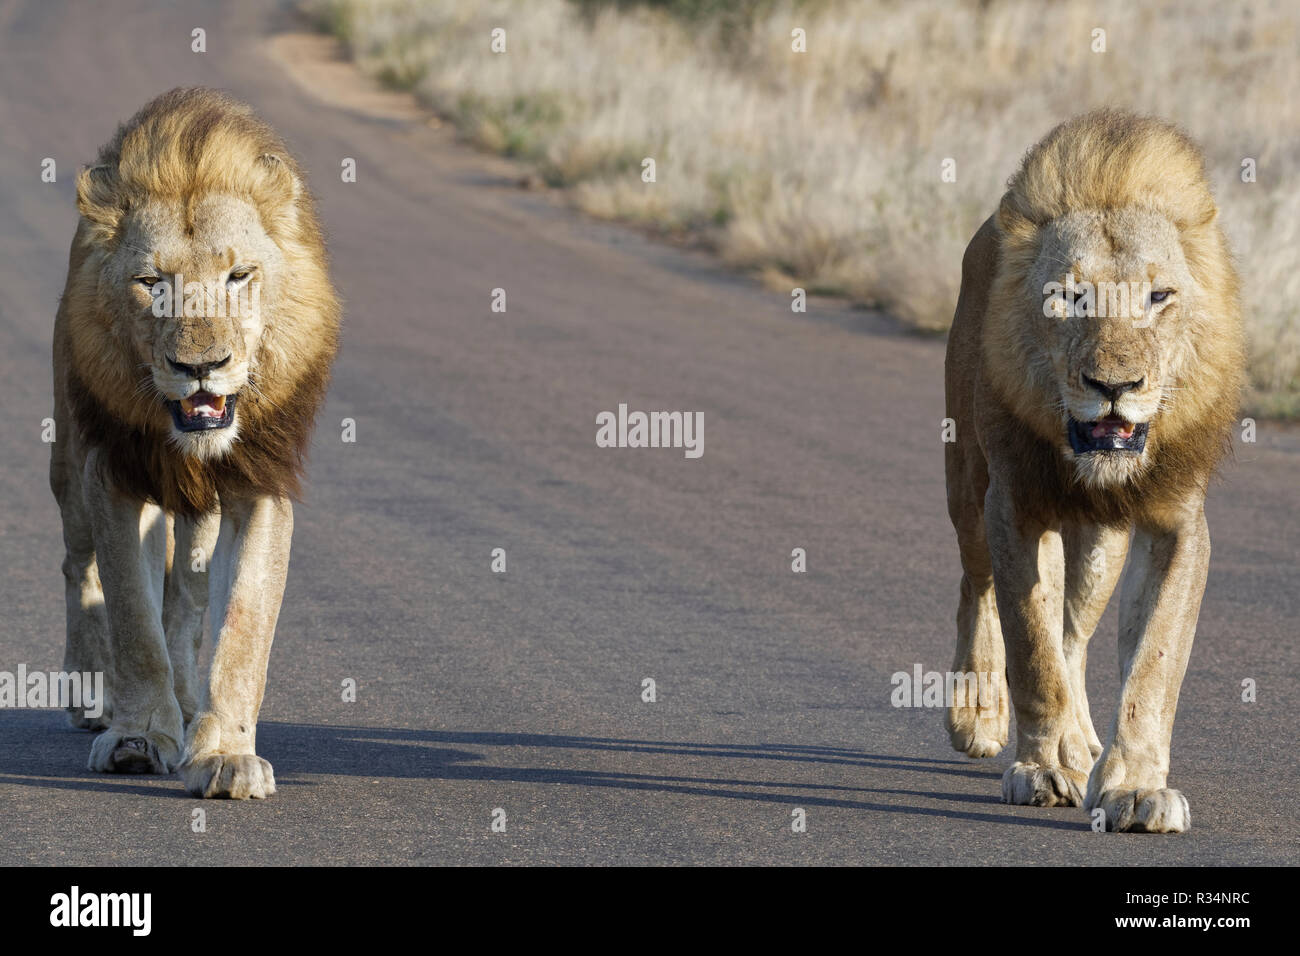 Les lions d'Afrique (Panthera leo), deux hommes adultes, l'un d'eux à moitié aveugle, marchant côte à côte sur une route goudronnée, Kruger National Park, Afrique du Sud Banque D'Images